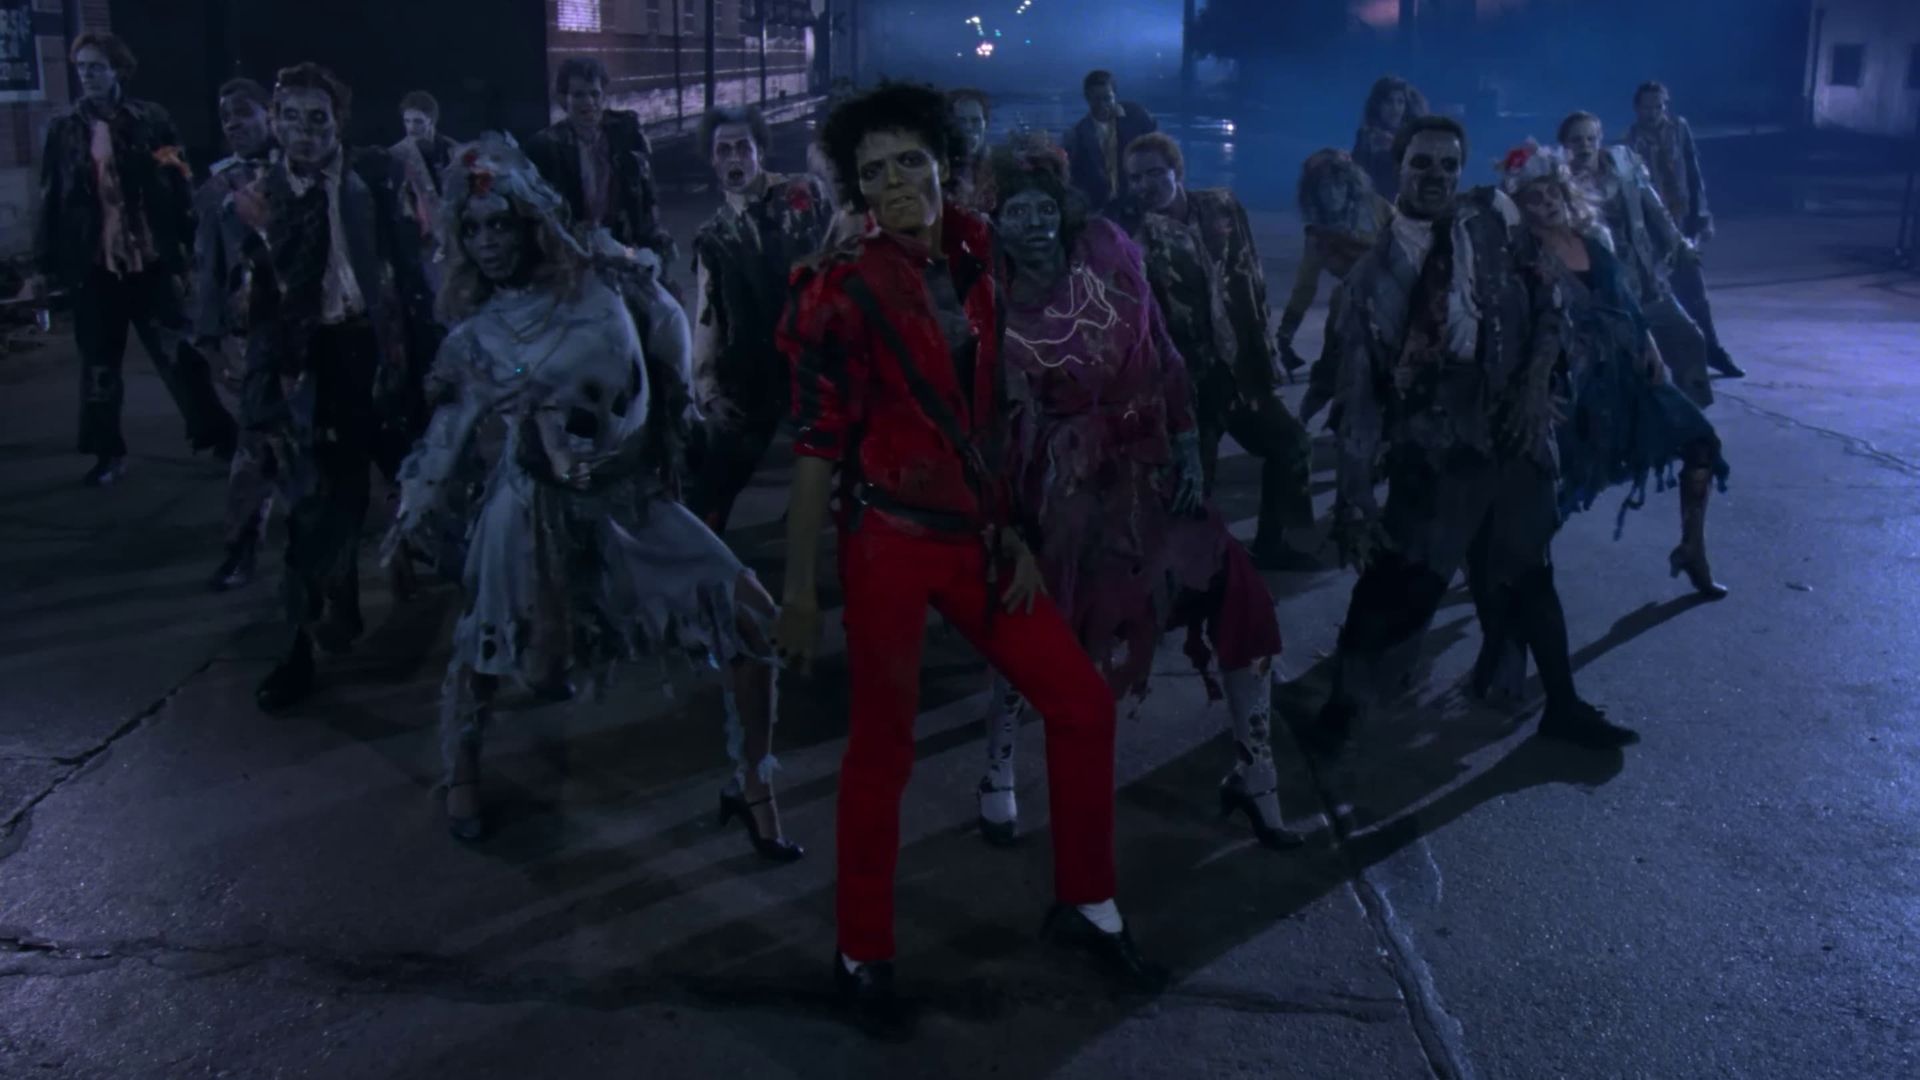 Michael Jackson: Thriller background